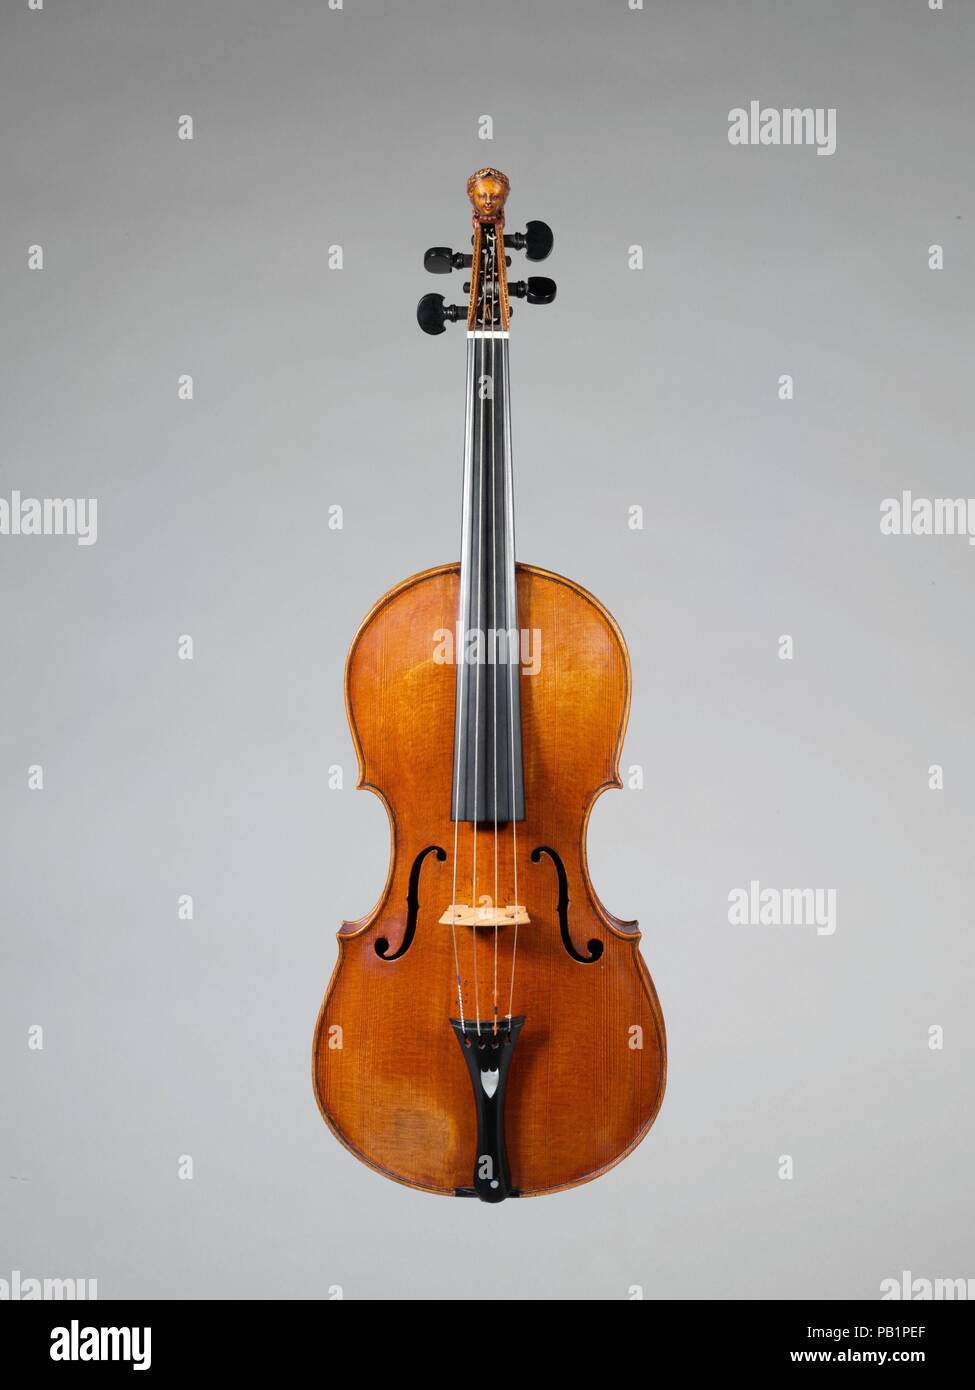 El violín. Cultura: alemán. Dimensiones: Altura (del cuerpo): 14. (35,6 cm)  de anchura (inferior bout): 7 15/16. (20,2 cm) de profundidad (RIB) Altura:  1 1/4". (3,2 cm). Maker: Joachim Tielke (alemán, 1641-1719).